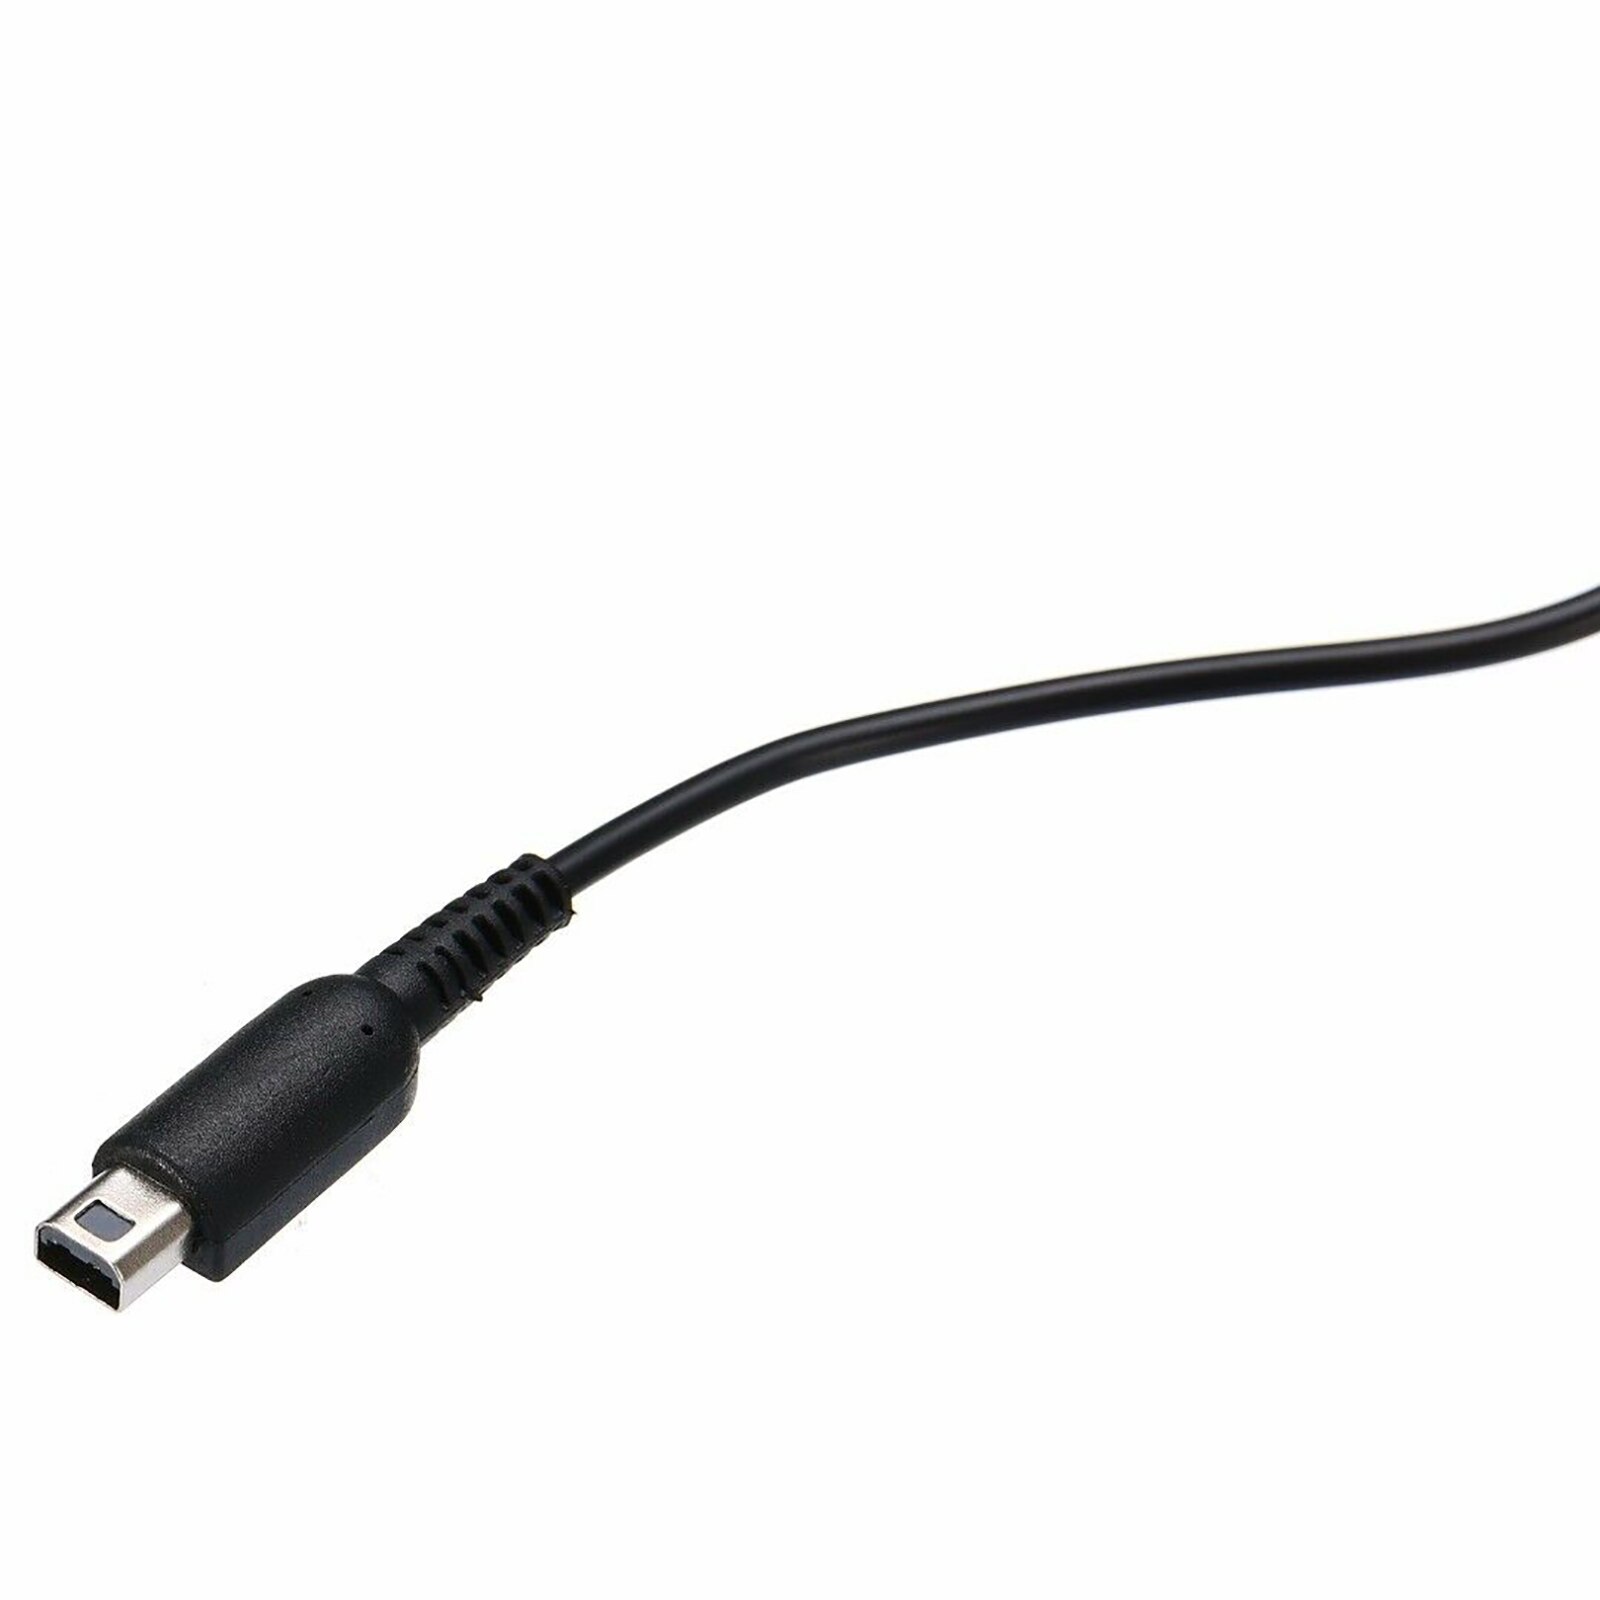 Usb Charger Power Cable Cord Lading Plug Voor 2DS 3DS 3Dsxl Dsi Dsixl Xl Niet Compatibel Met Ds, ds Lite, Wiiu